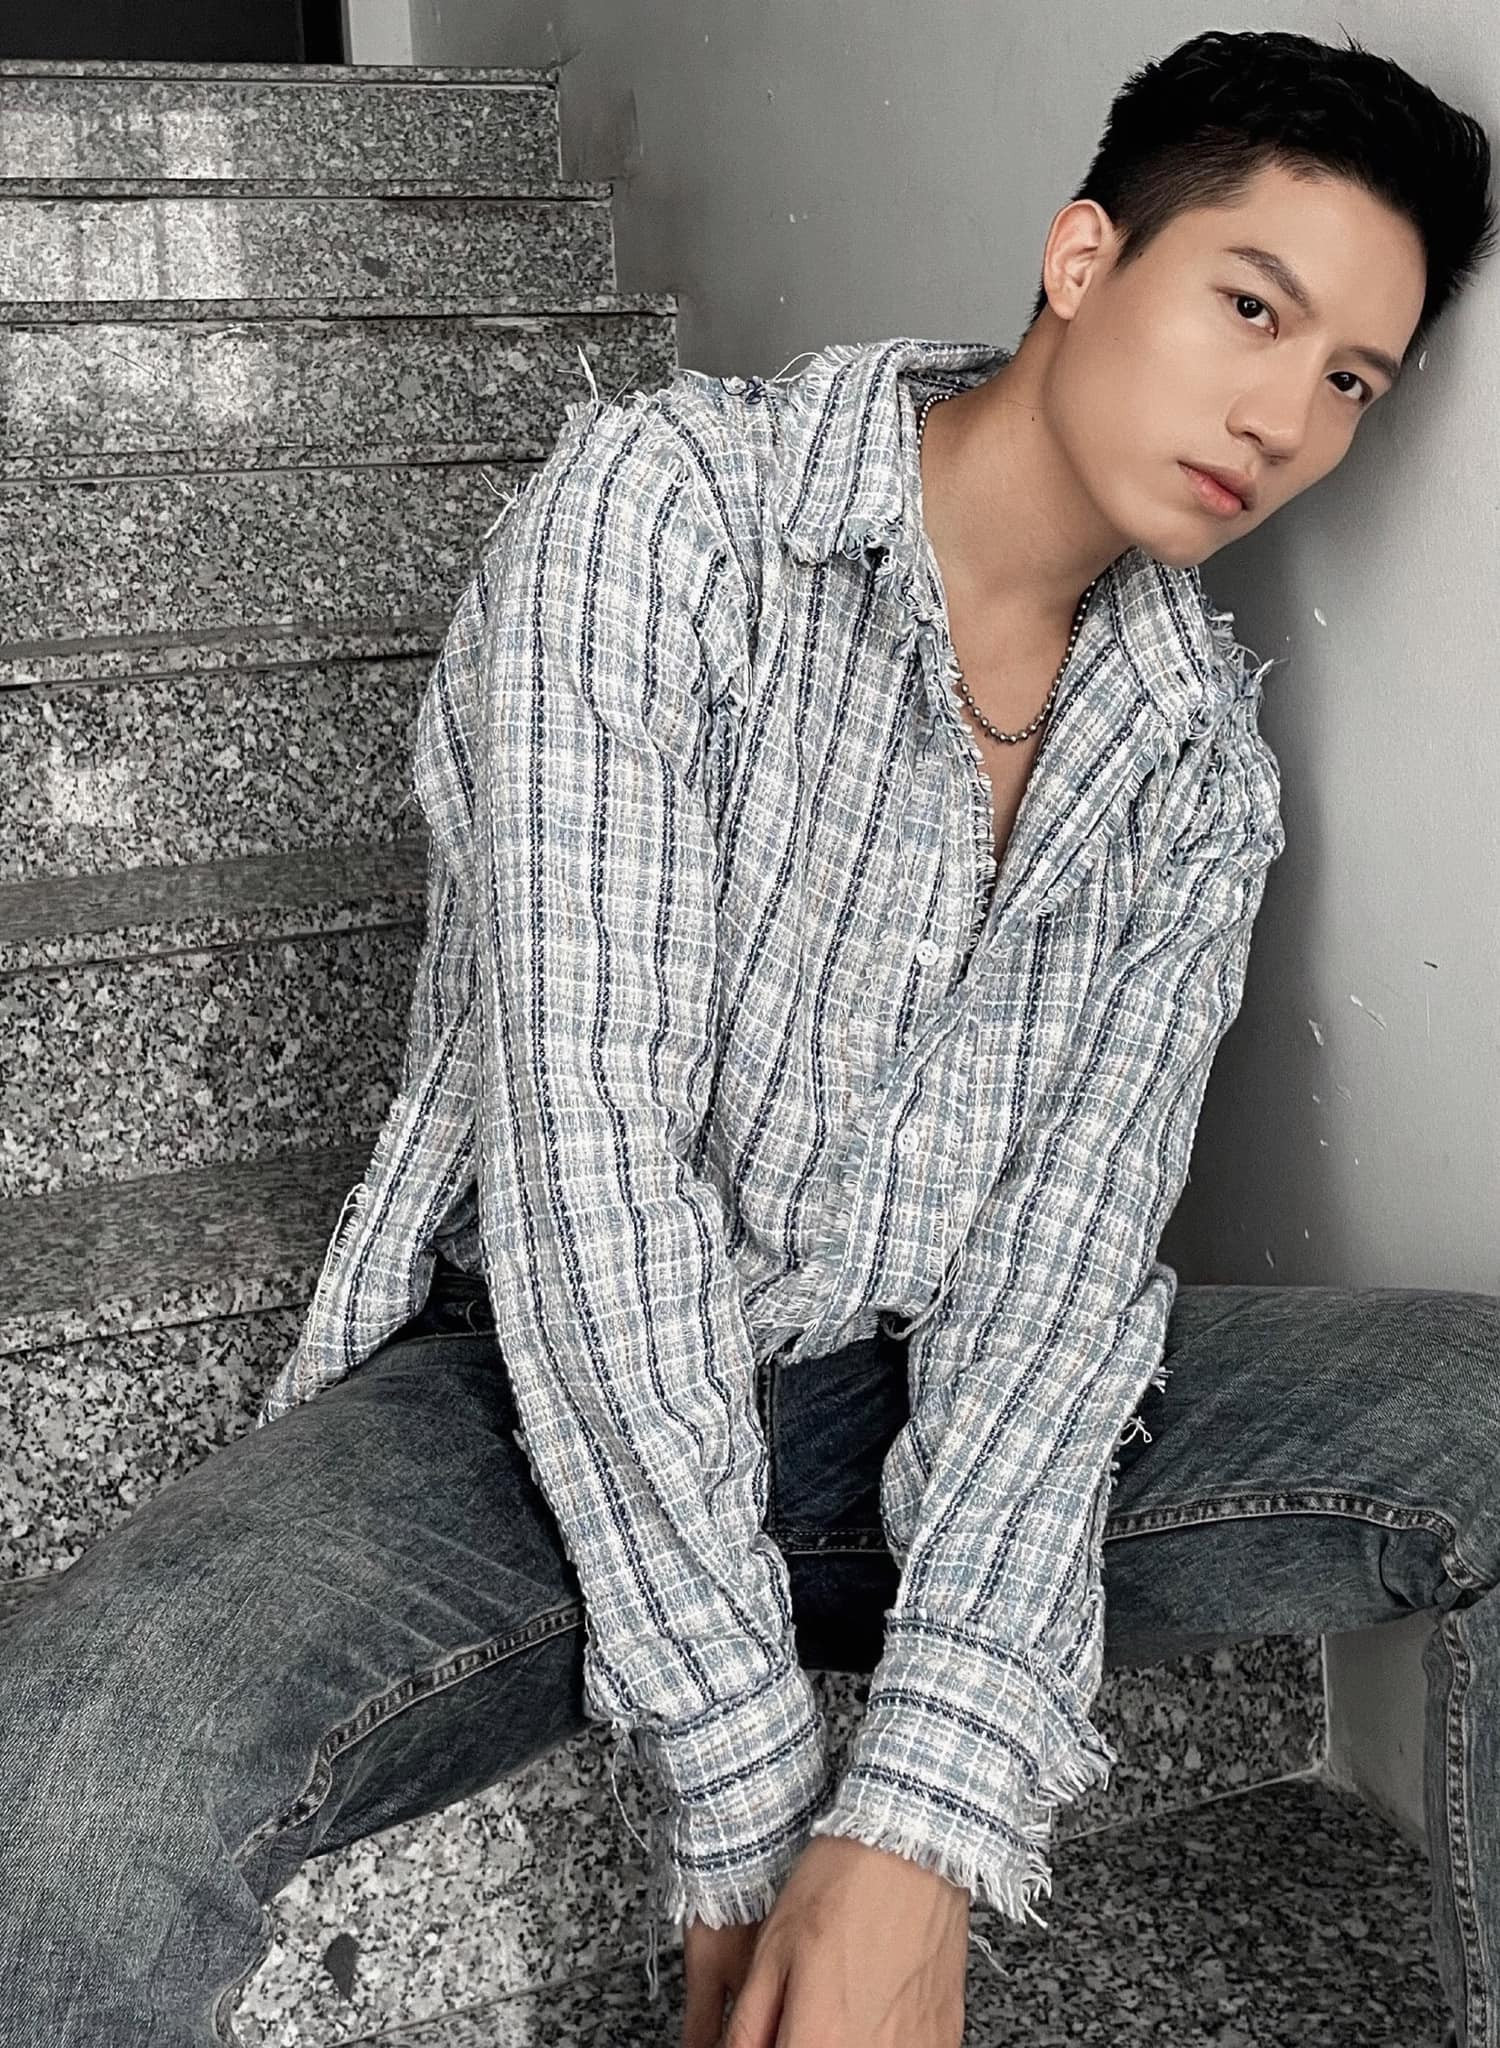 Anh Tú là mỹ nam sinh năm 1992 nổi lên từ cuộc thi Giọng hát Việt - The Voice Việt Nam 2017 với vị trí Á quân.